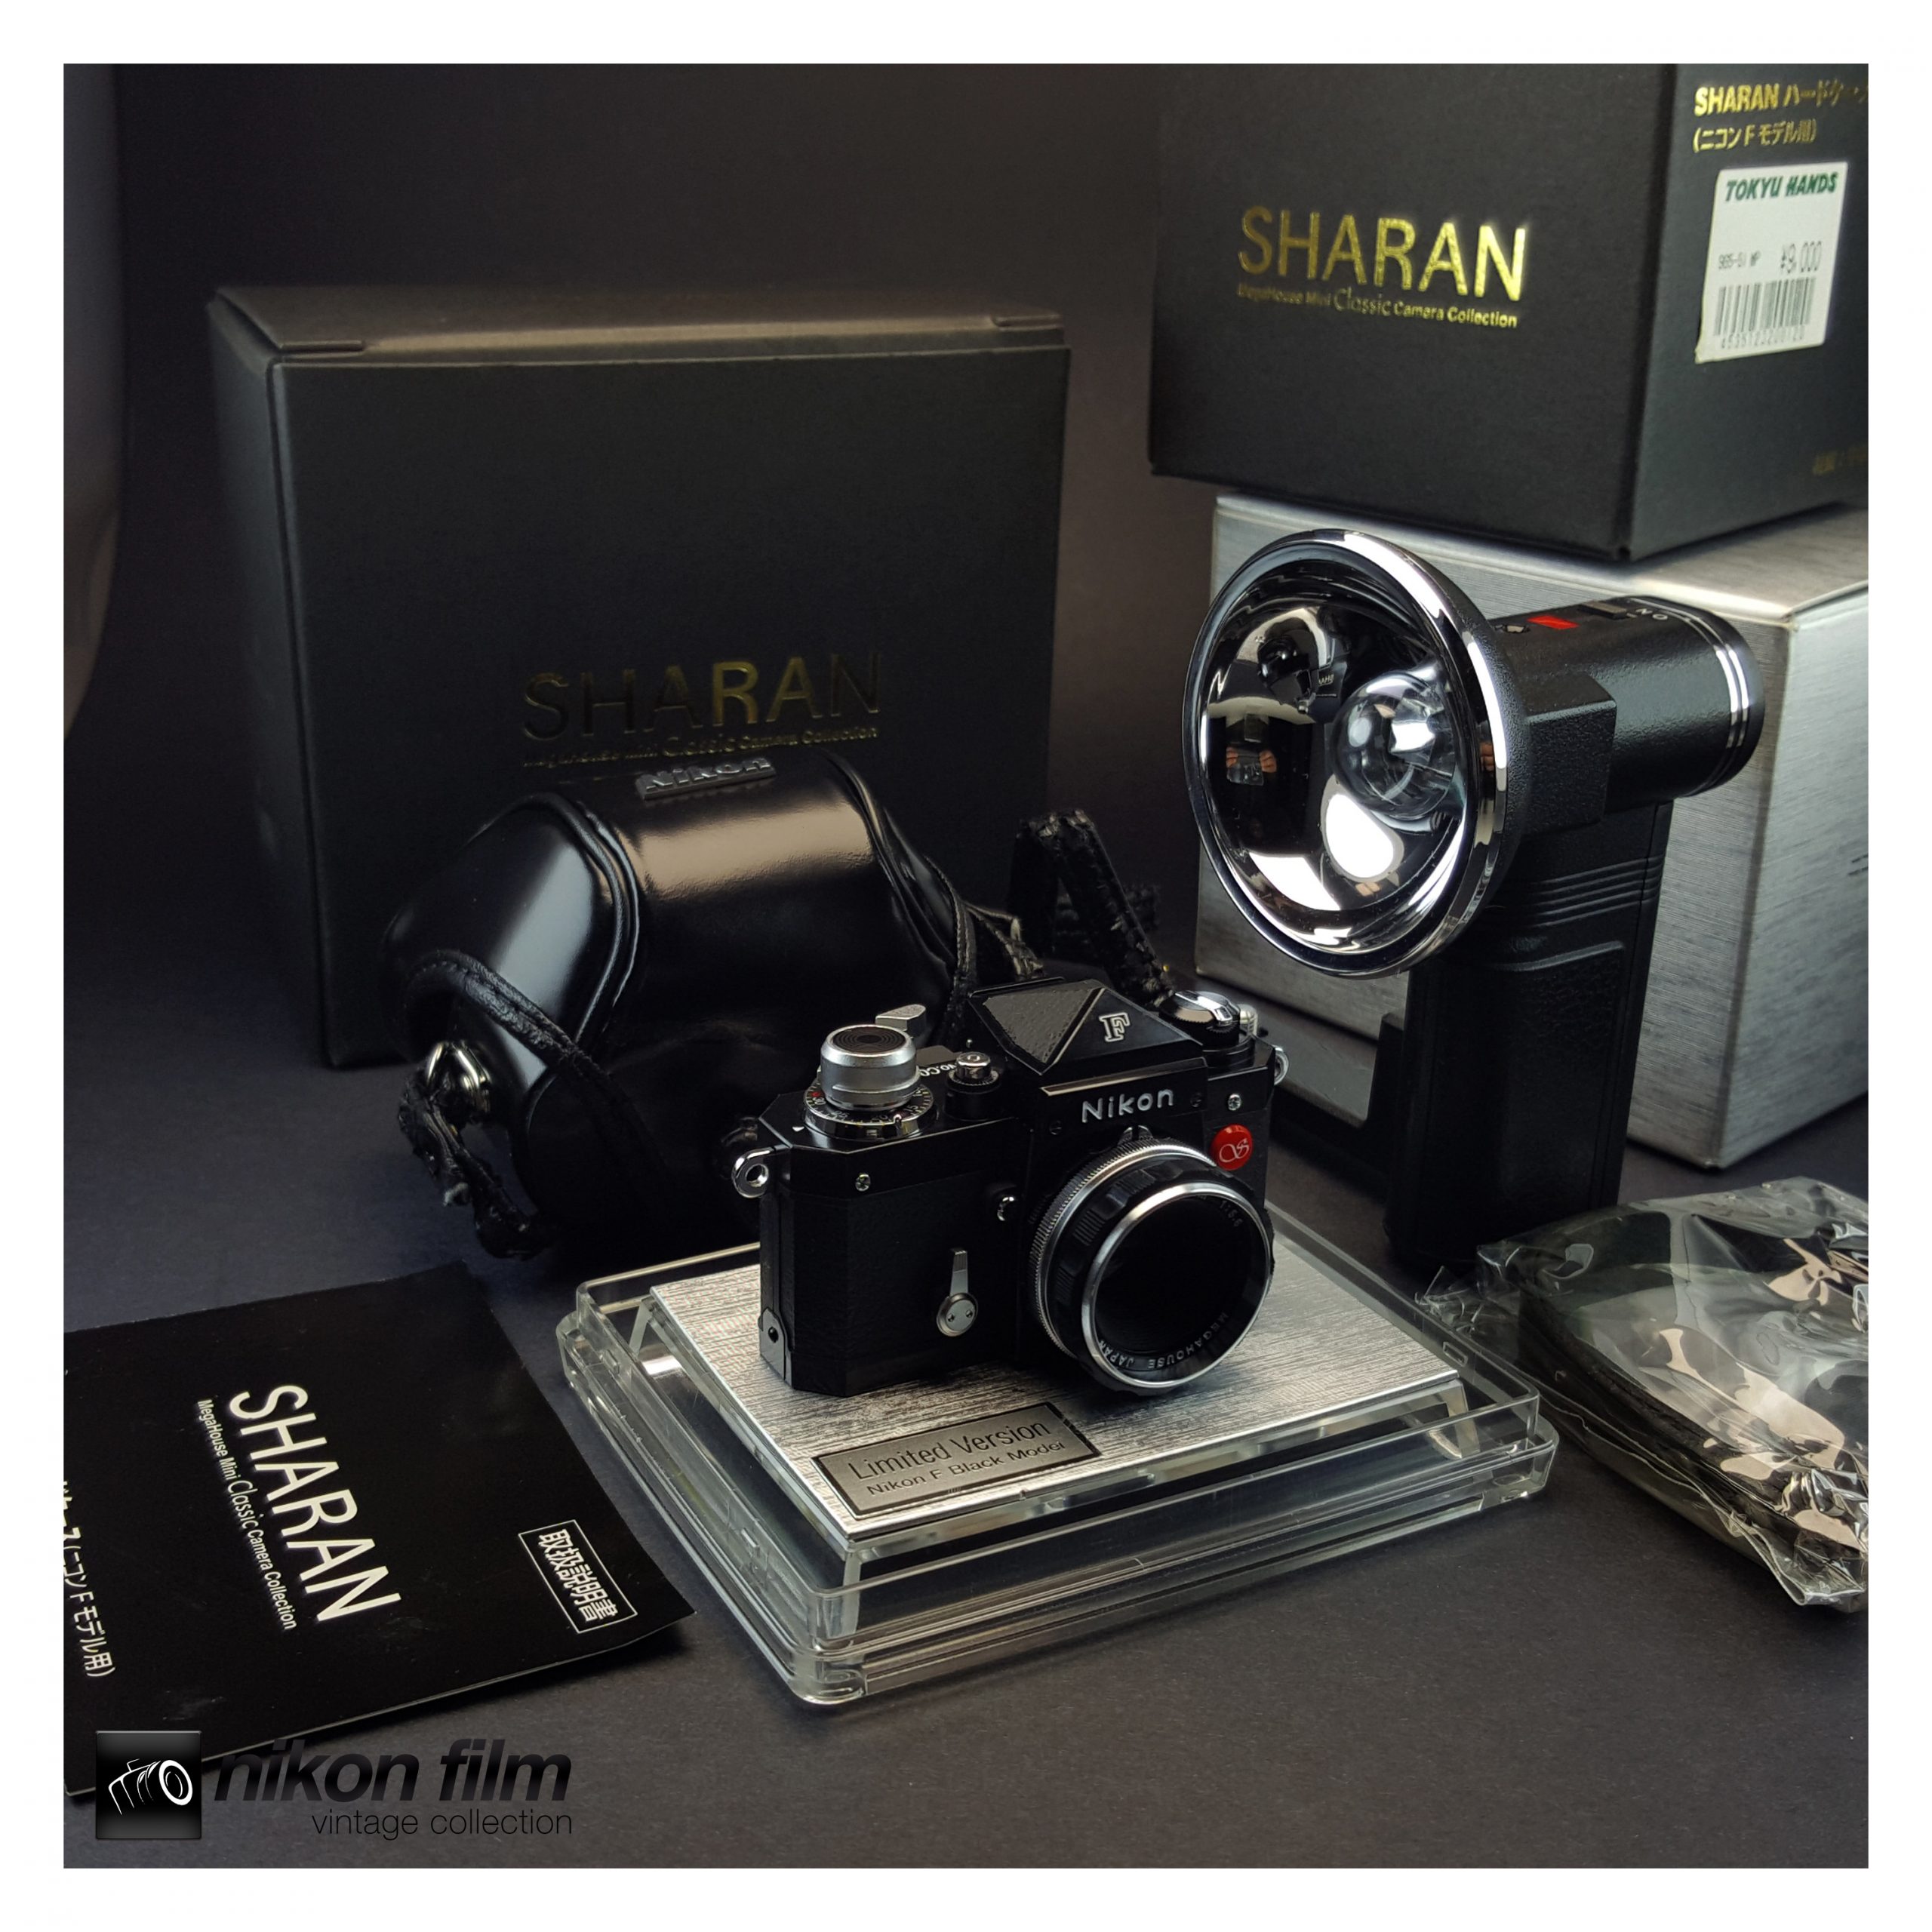 Sharan Minox Miniature Nikon F Camera (Limited to 5,000) - Black